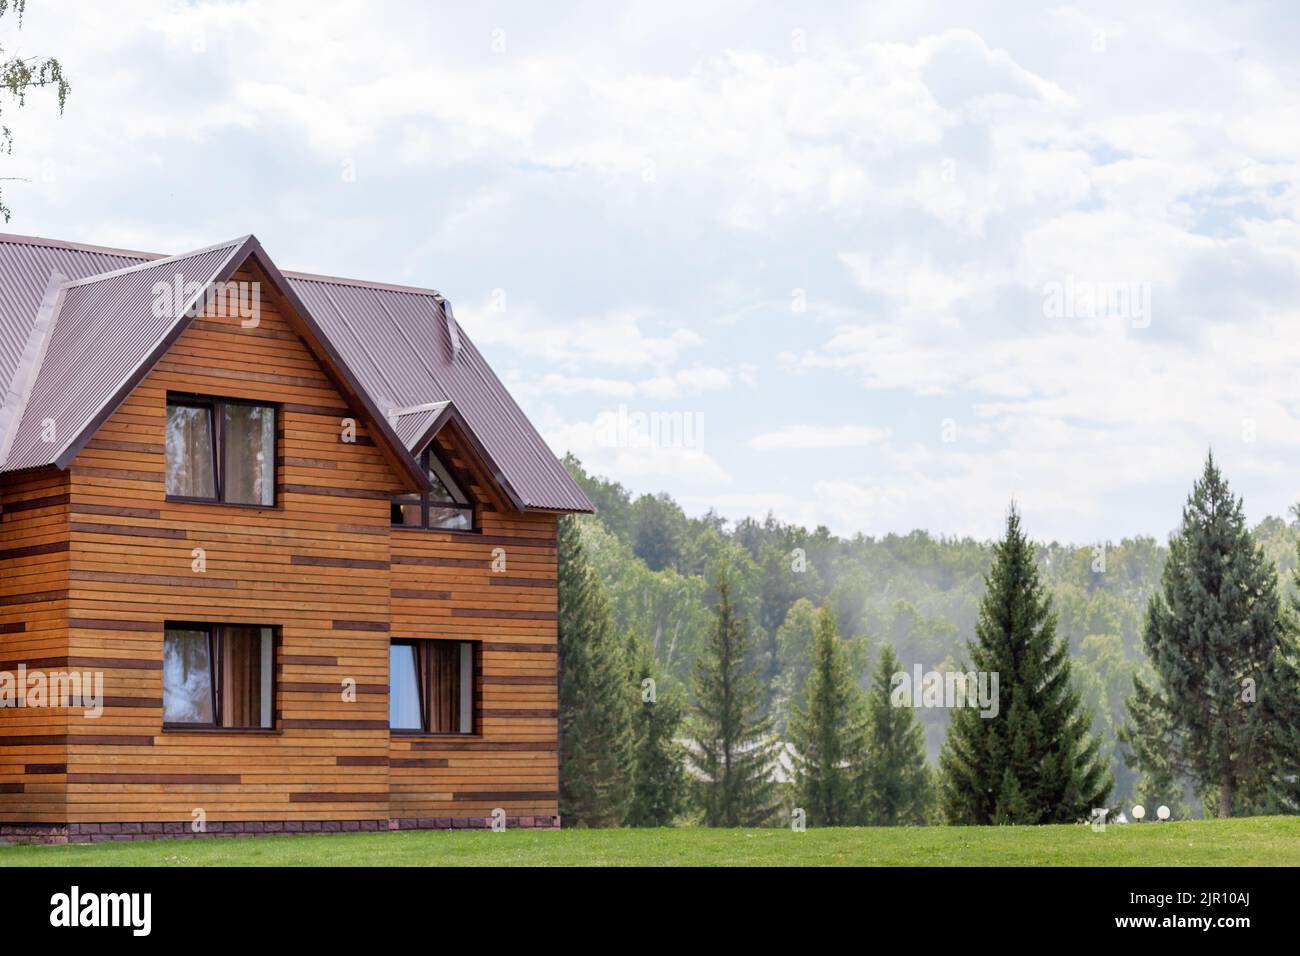 Cottage en bois de deux étages avec fenêtres nature et pelouse verte. Vente ou achat de maisons neuves. Un hôtel pour les touristes. Banque D'Images